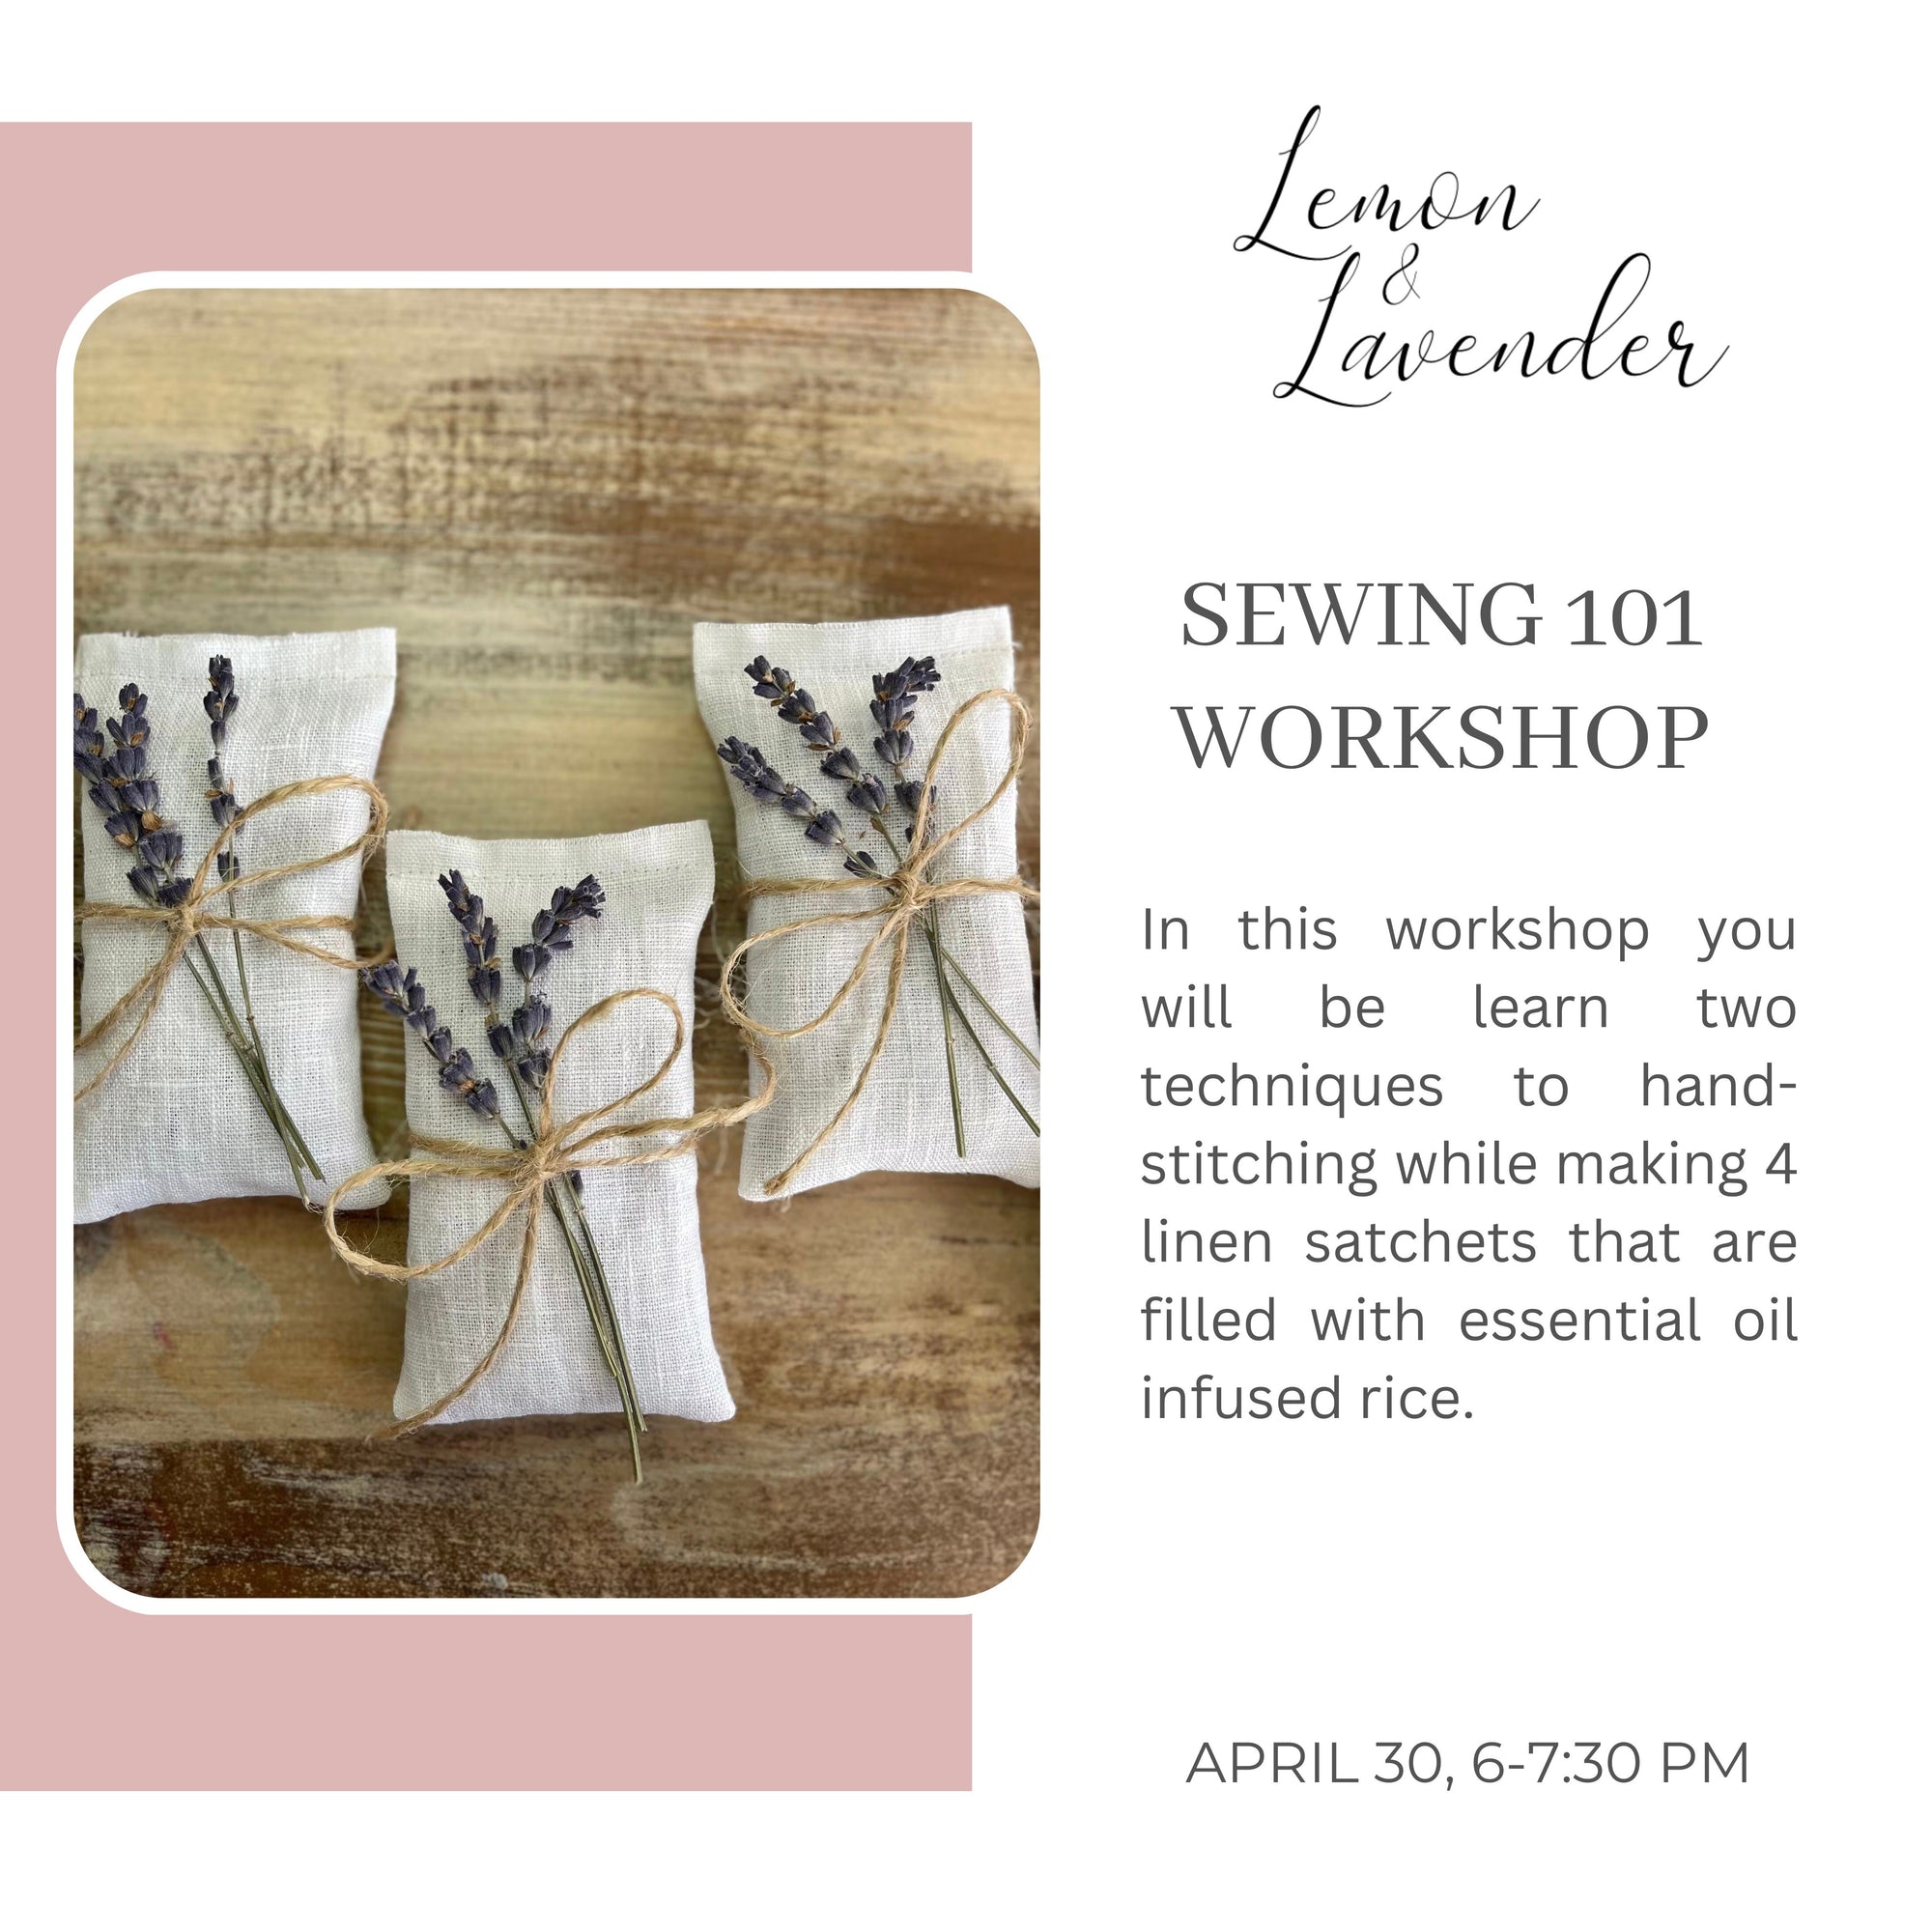 Sewing 101 Workshop- April 30, 6-7:30 pm - Lemon & Lavender